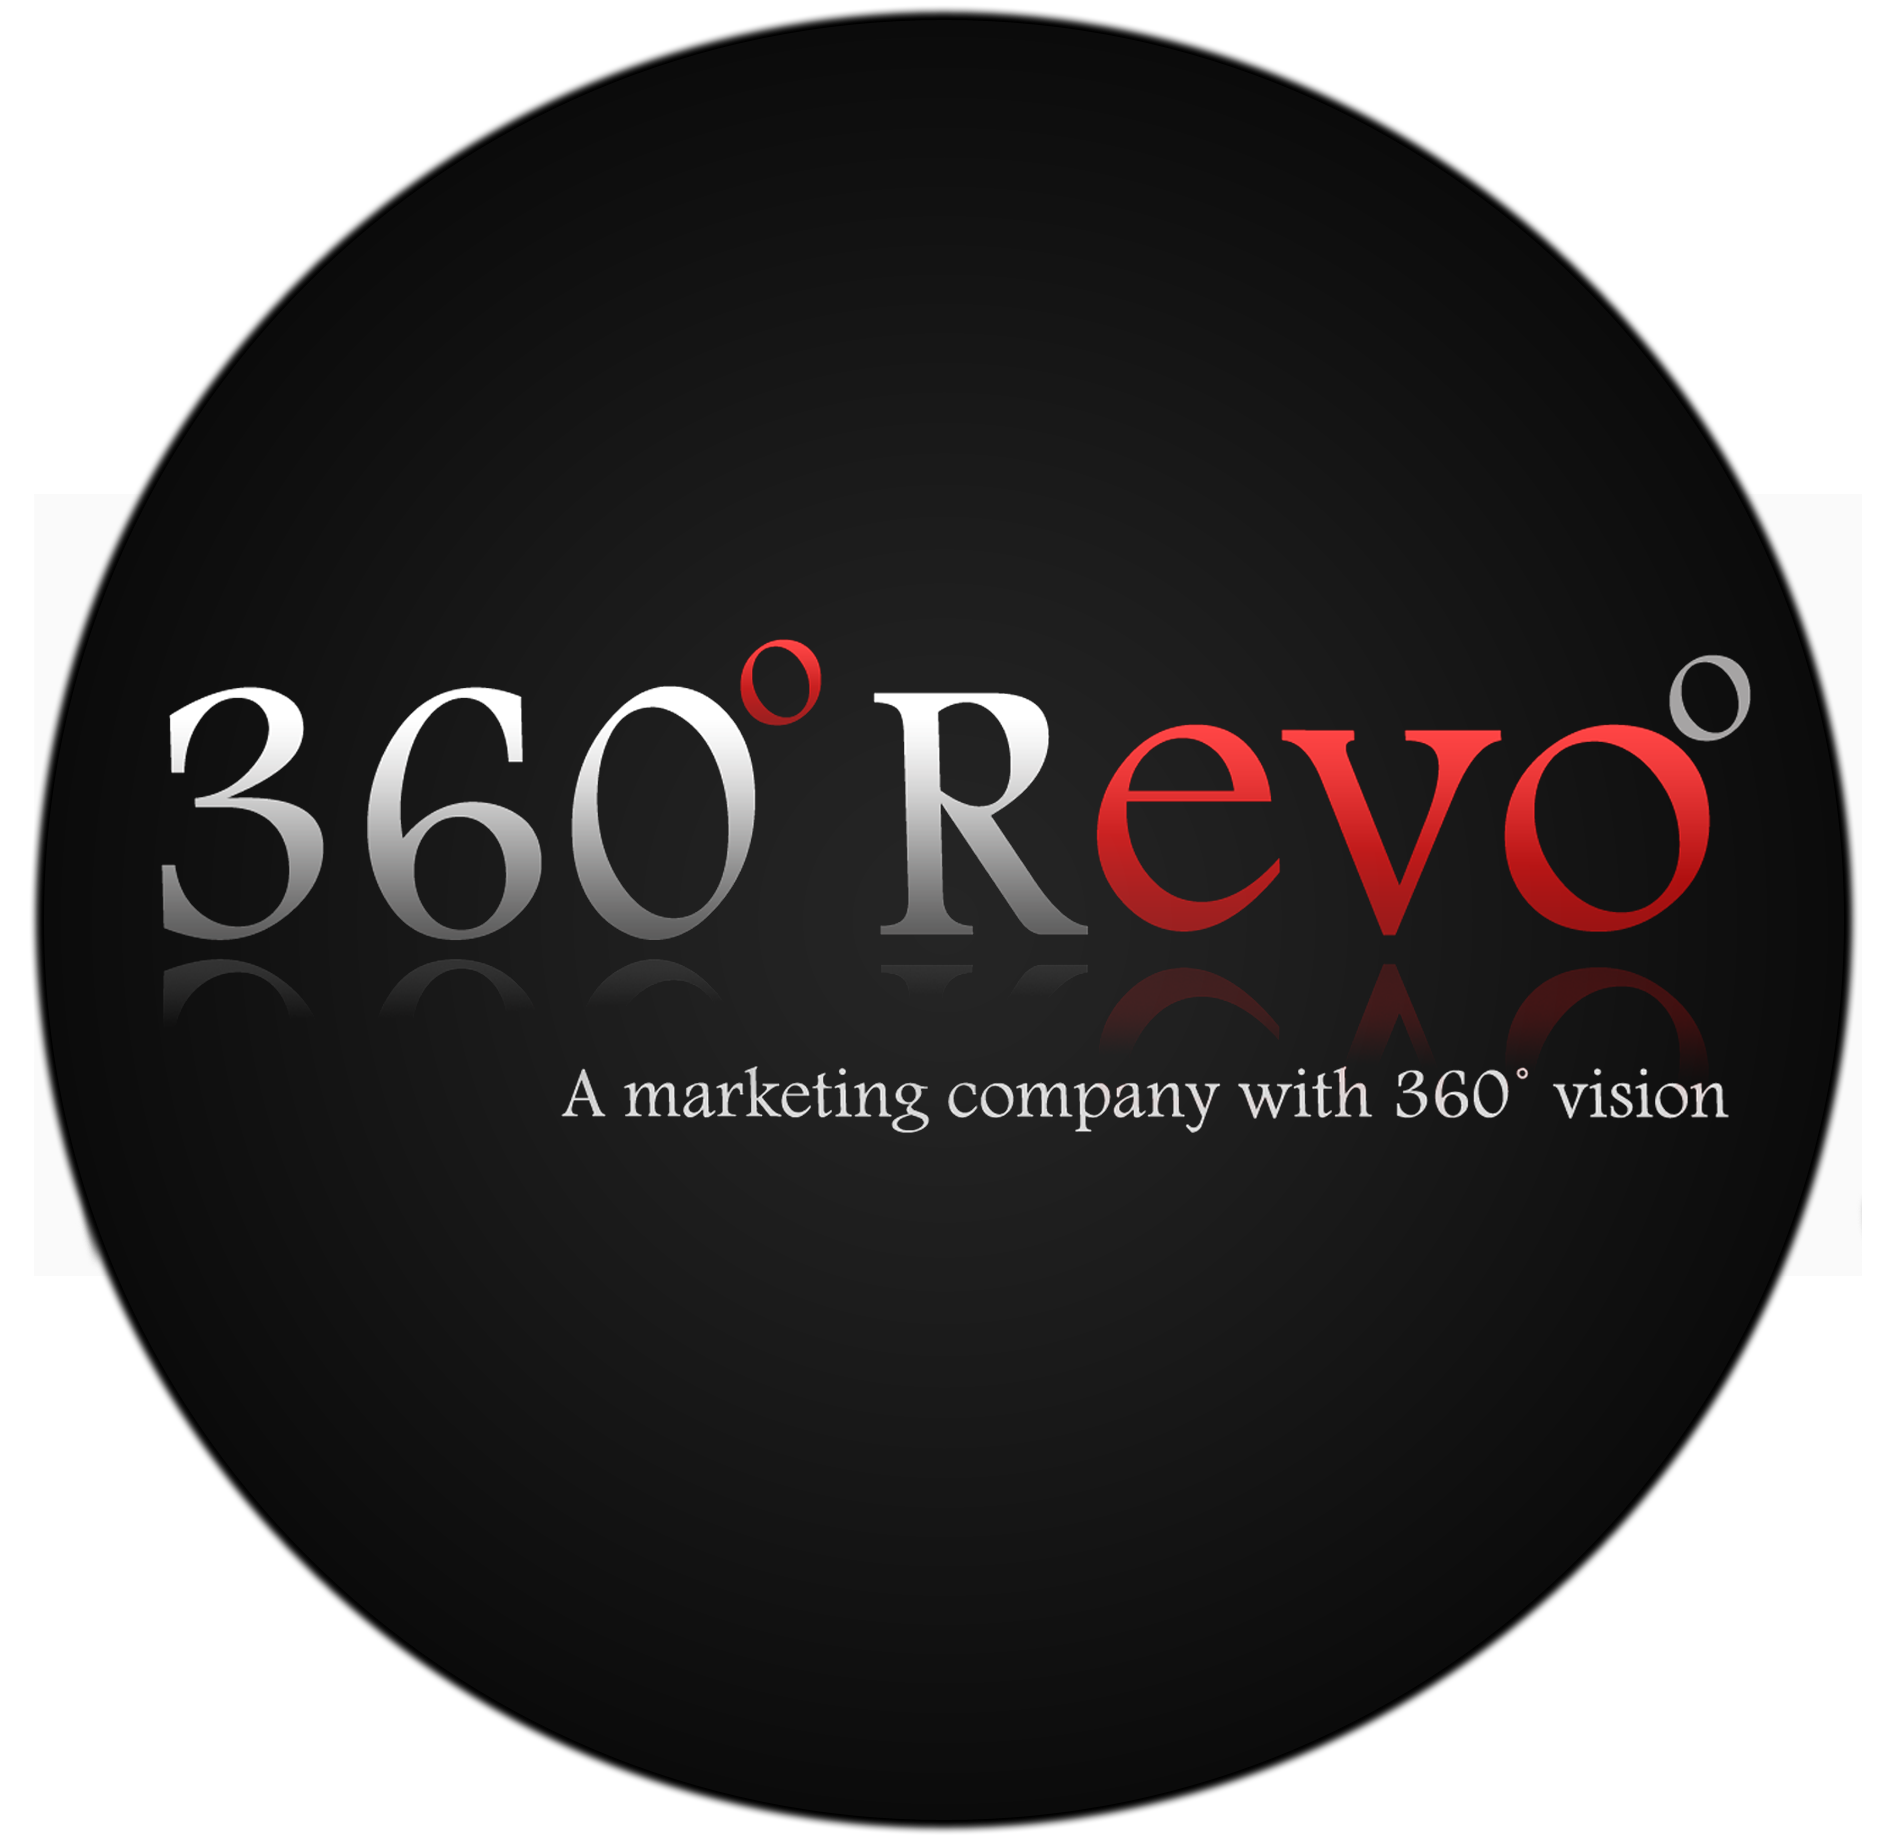 360 Revo